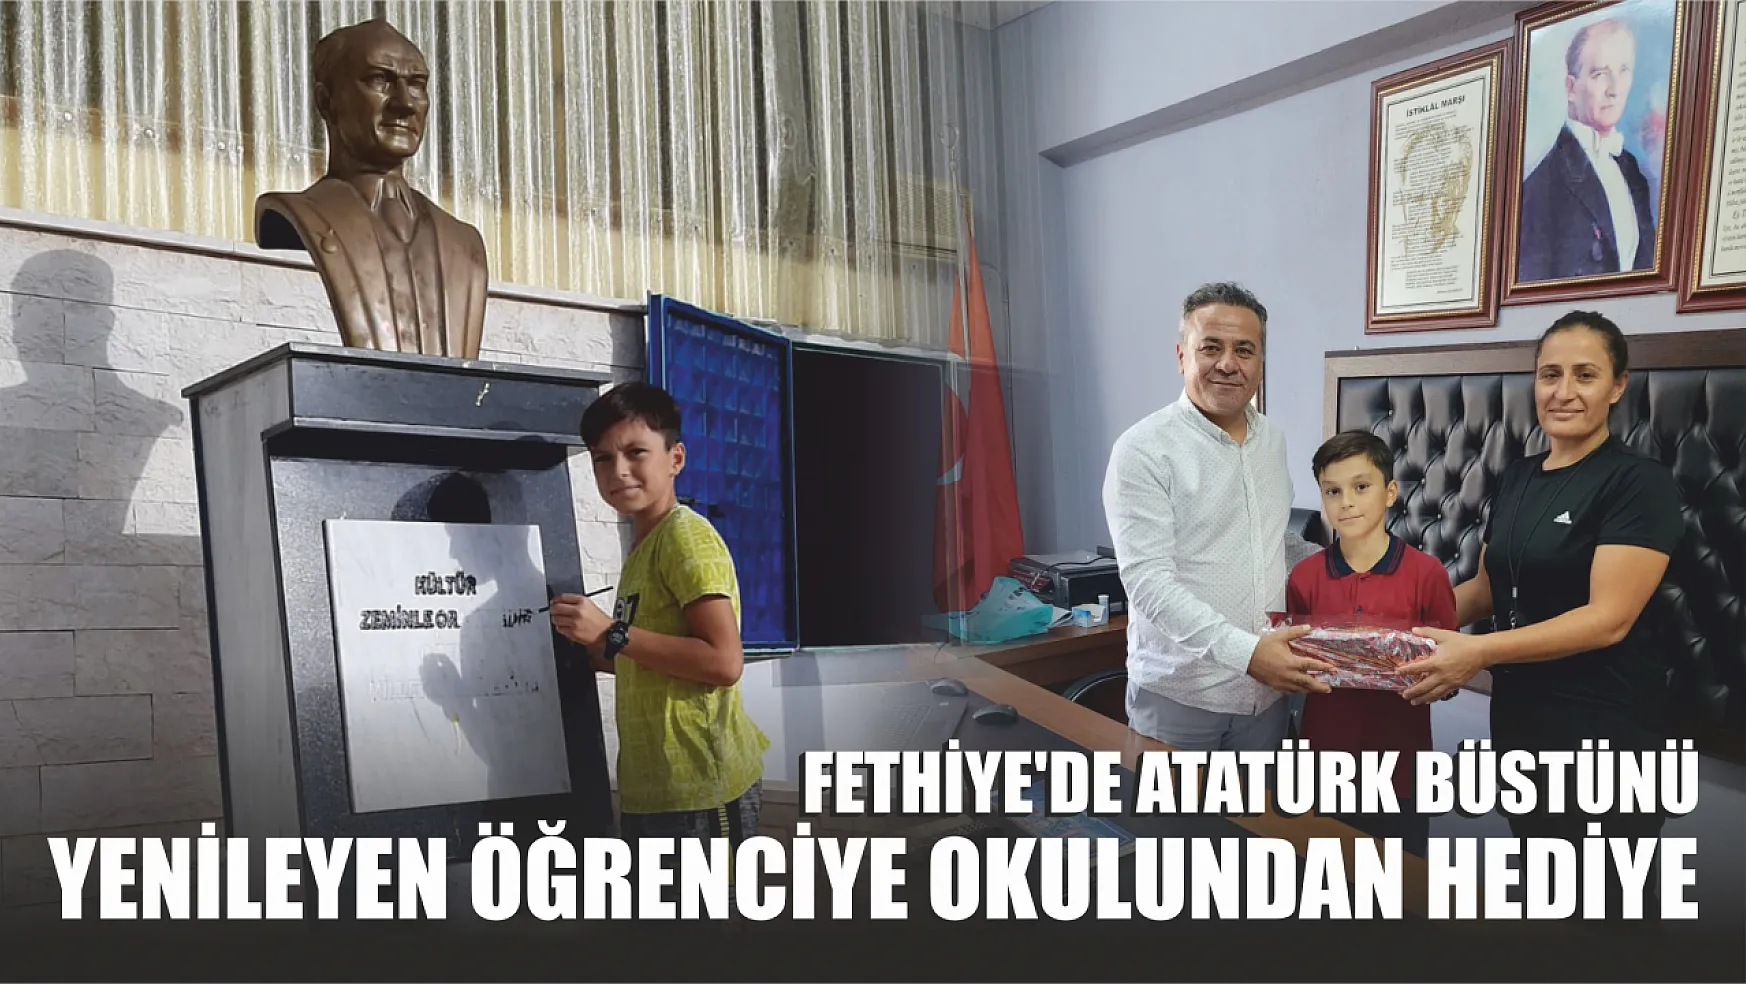 Fethiye'de Atatürk Büstünü Yenileyen Öğrenciye Okulundan Hediye 